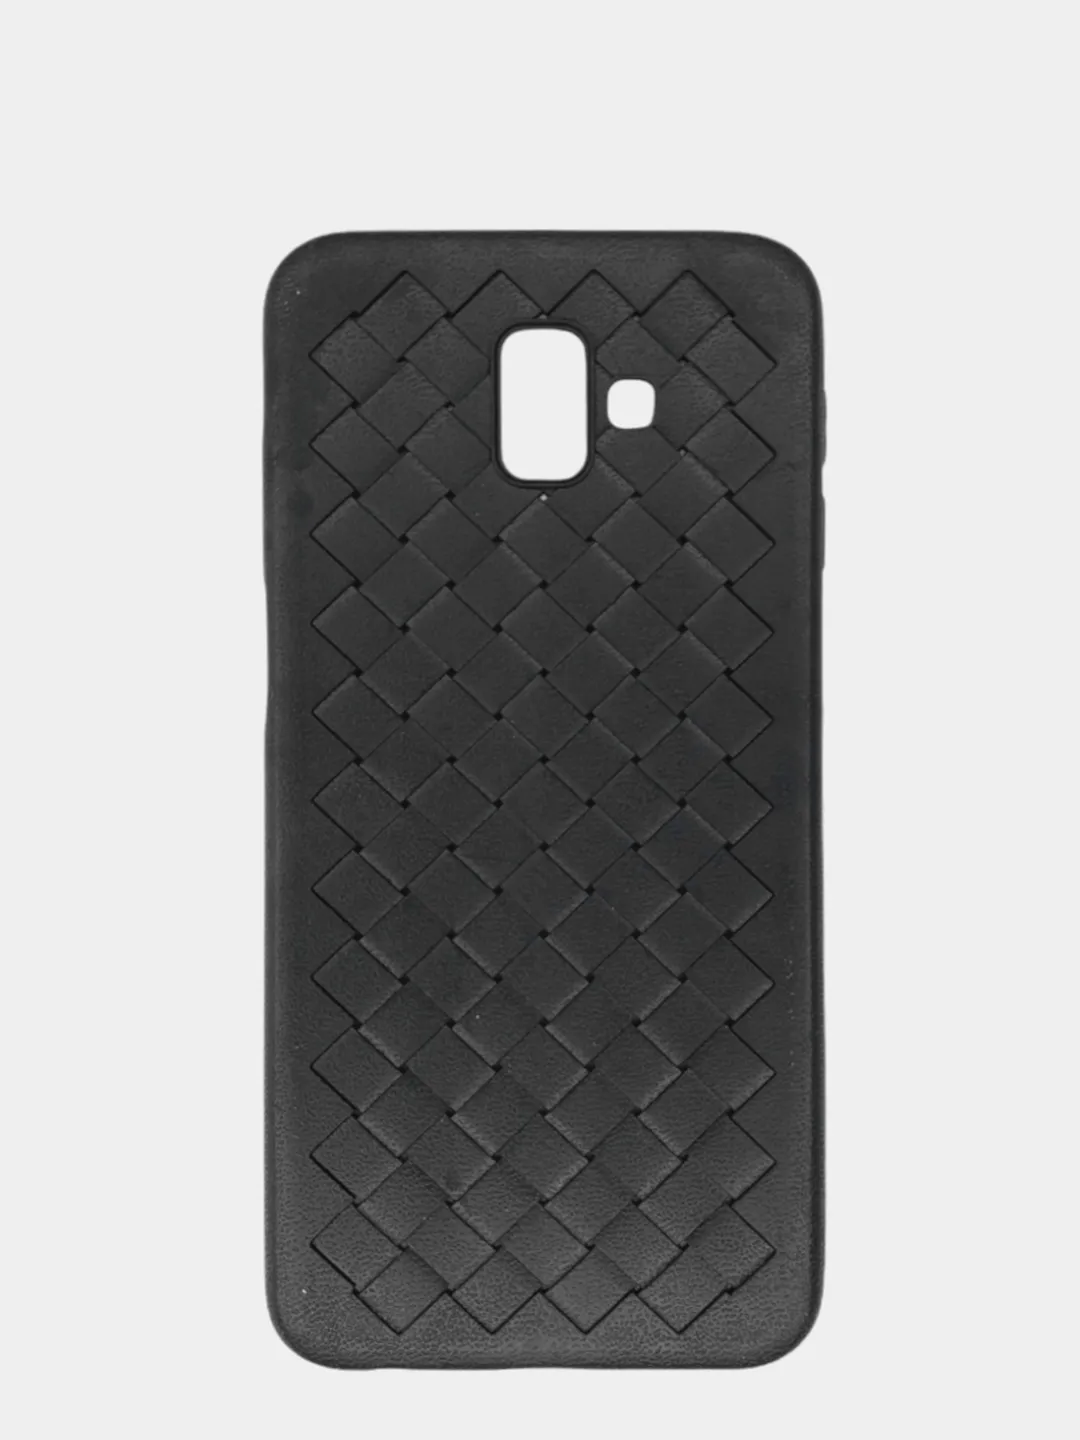 Чехол-силикон плетеный Samsung J6 (2018) черный ()